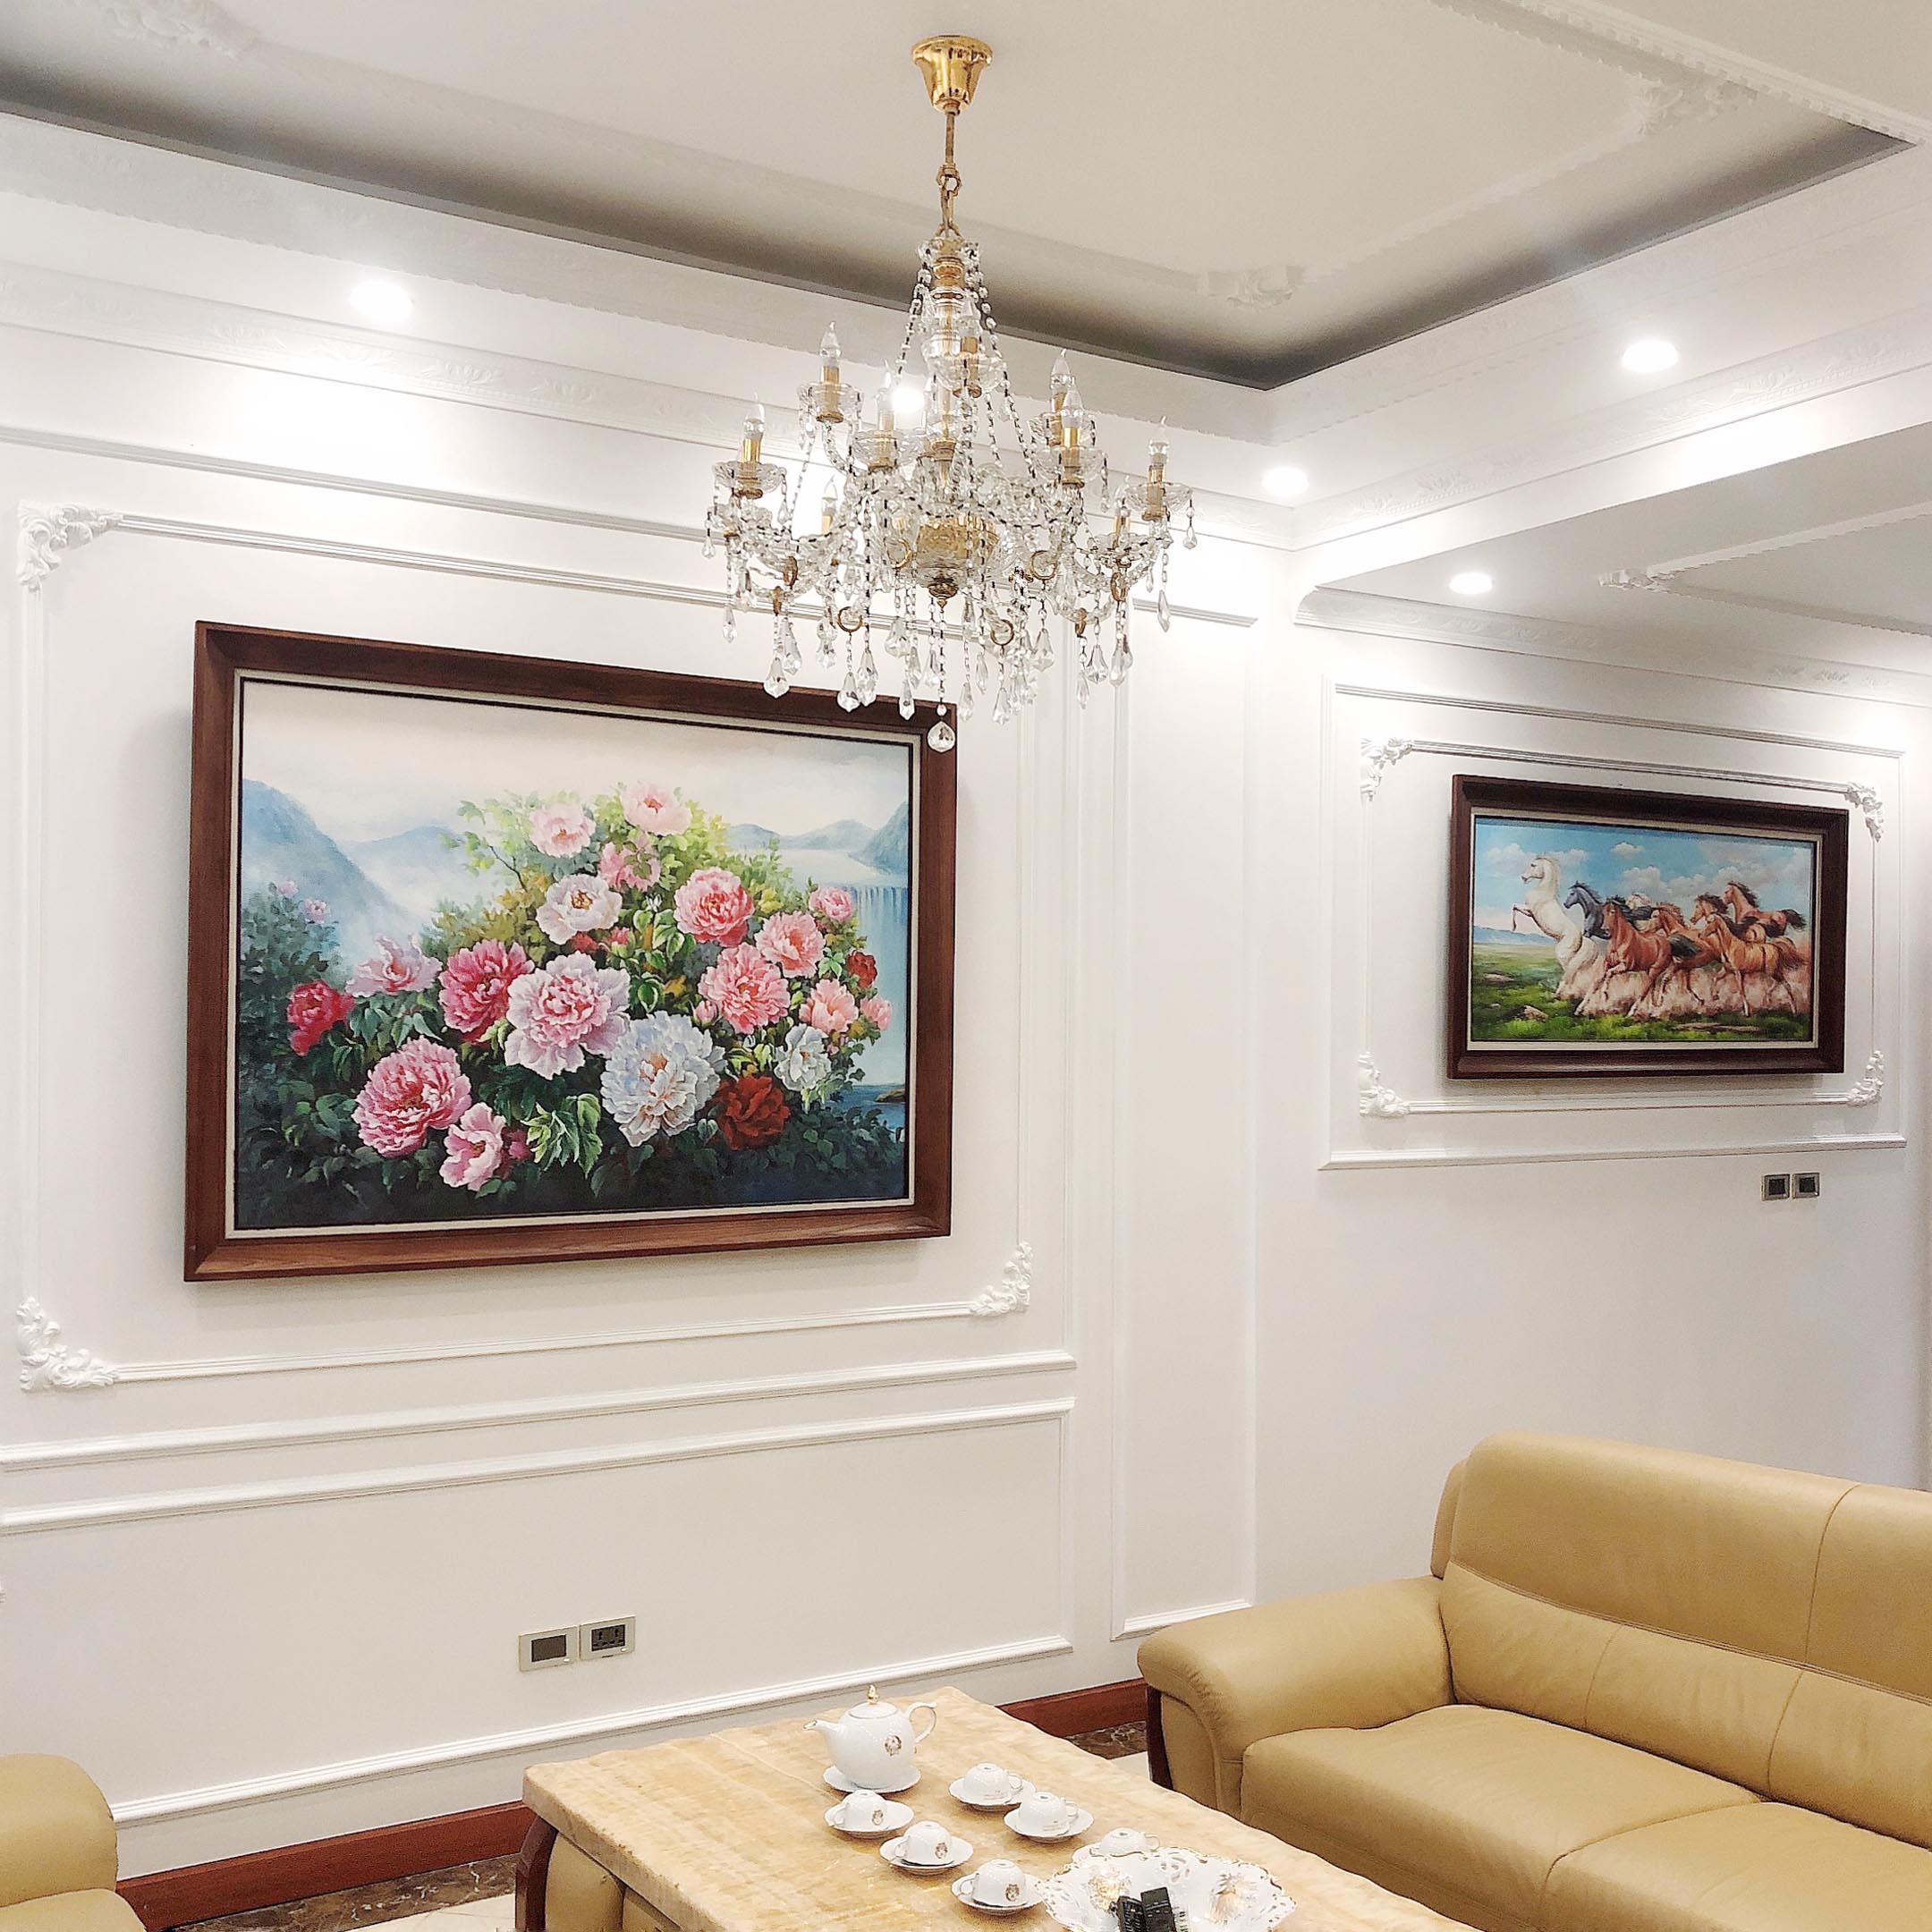 Bàn giao tranh sơn acrylic cao cấp vẽ Hoa Mẫu Đơn và Bát Mã cho khách hàng tại Trường Chinh, Hà Nội 1